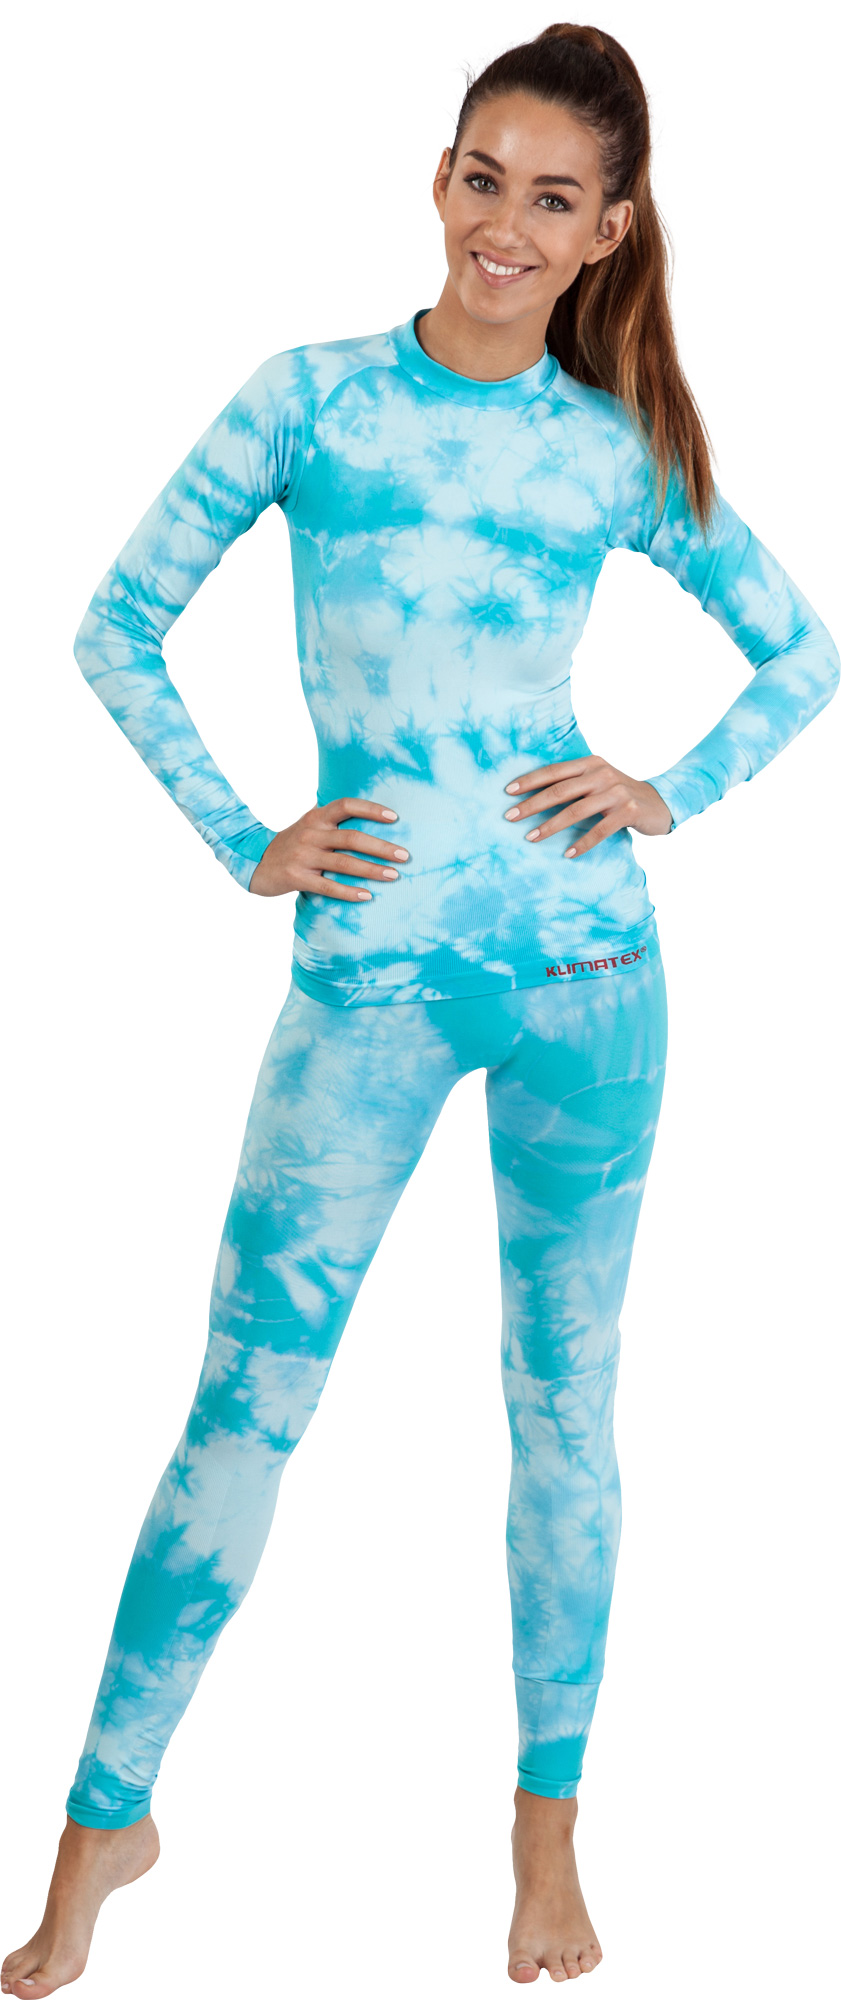 Women’s seamless thermal leggings